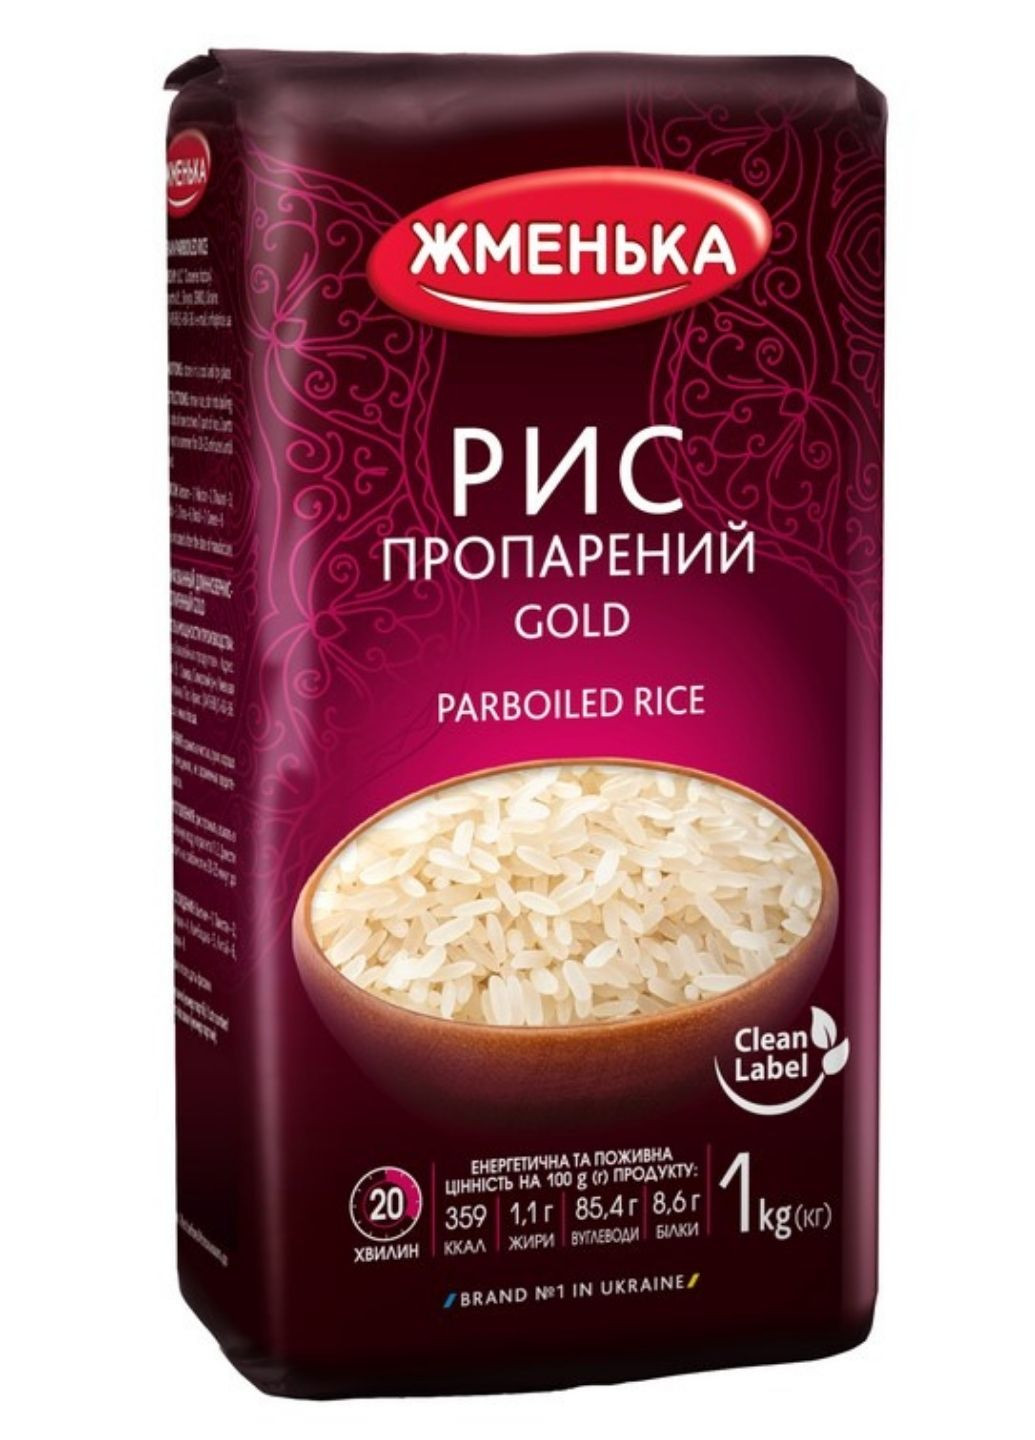 Рис пропаренный Gold Премиум 1 кг Жменька (244010520)